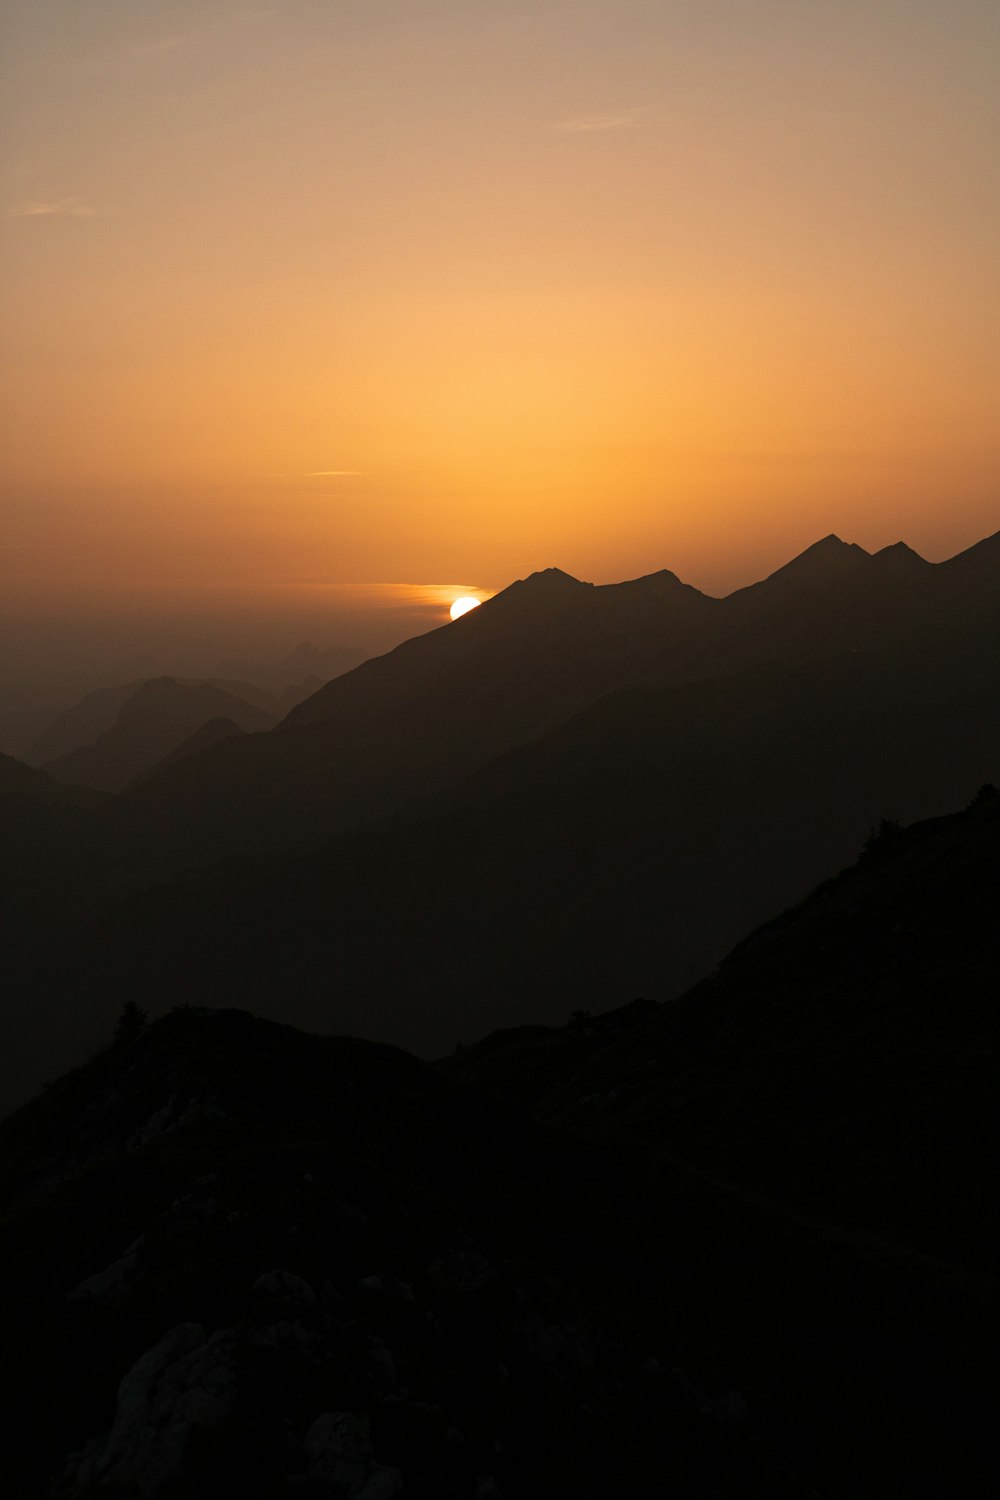 Le soleil se couche sur une chaîne de montagnes